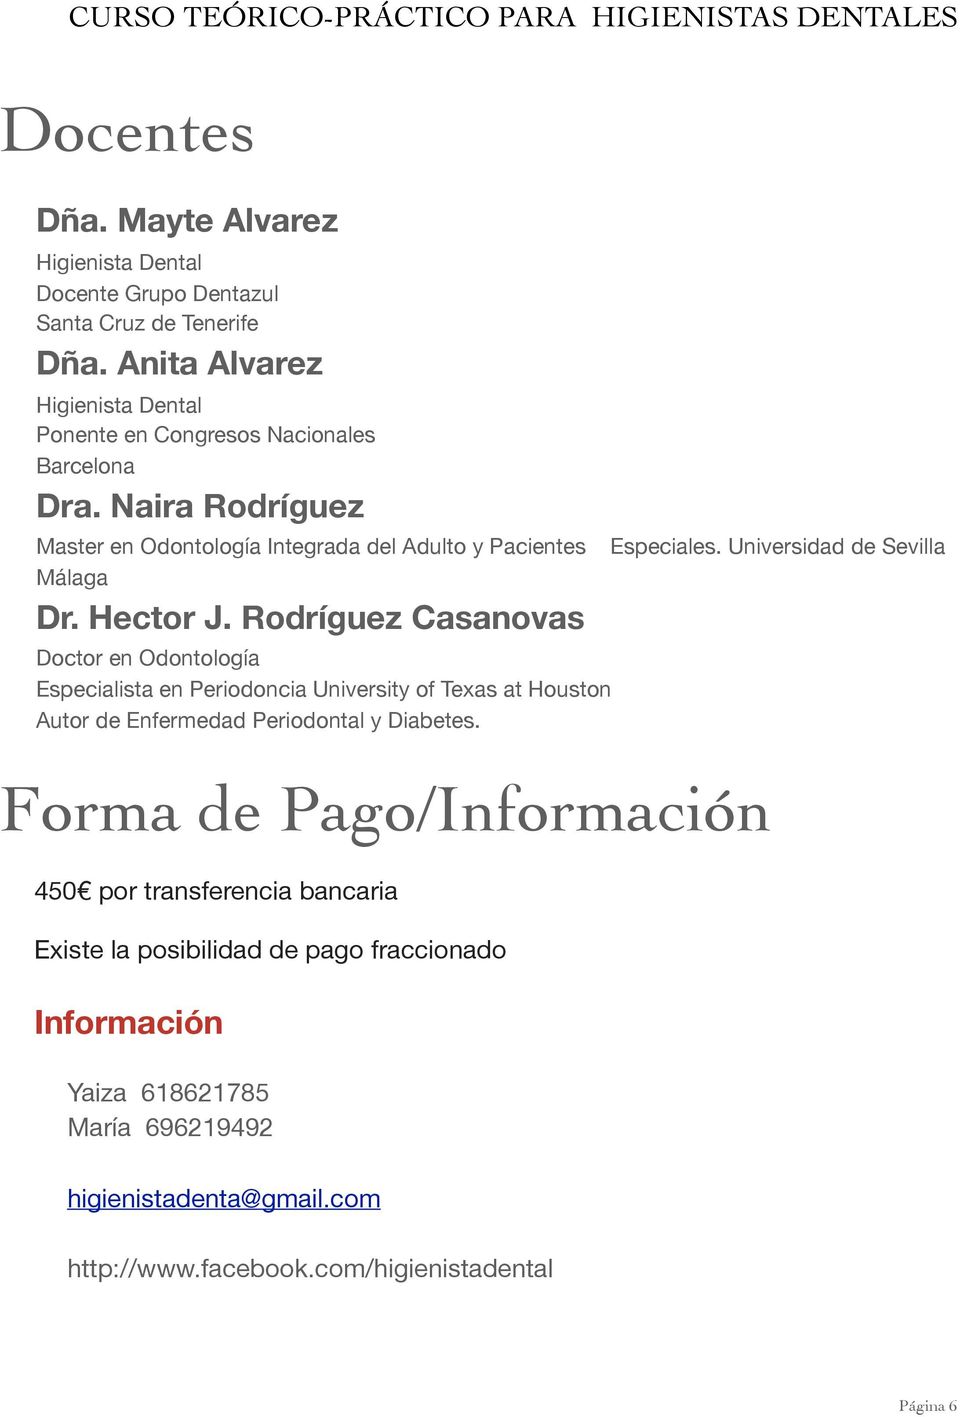 Hector J. Rodríguez Casanovas Doctor en Odontología Especialista en Periodoncia University of Texas at Houston Autor de Enfermedad Periodontal y Diabetes. Especiales.